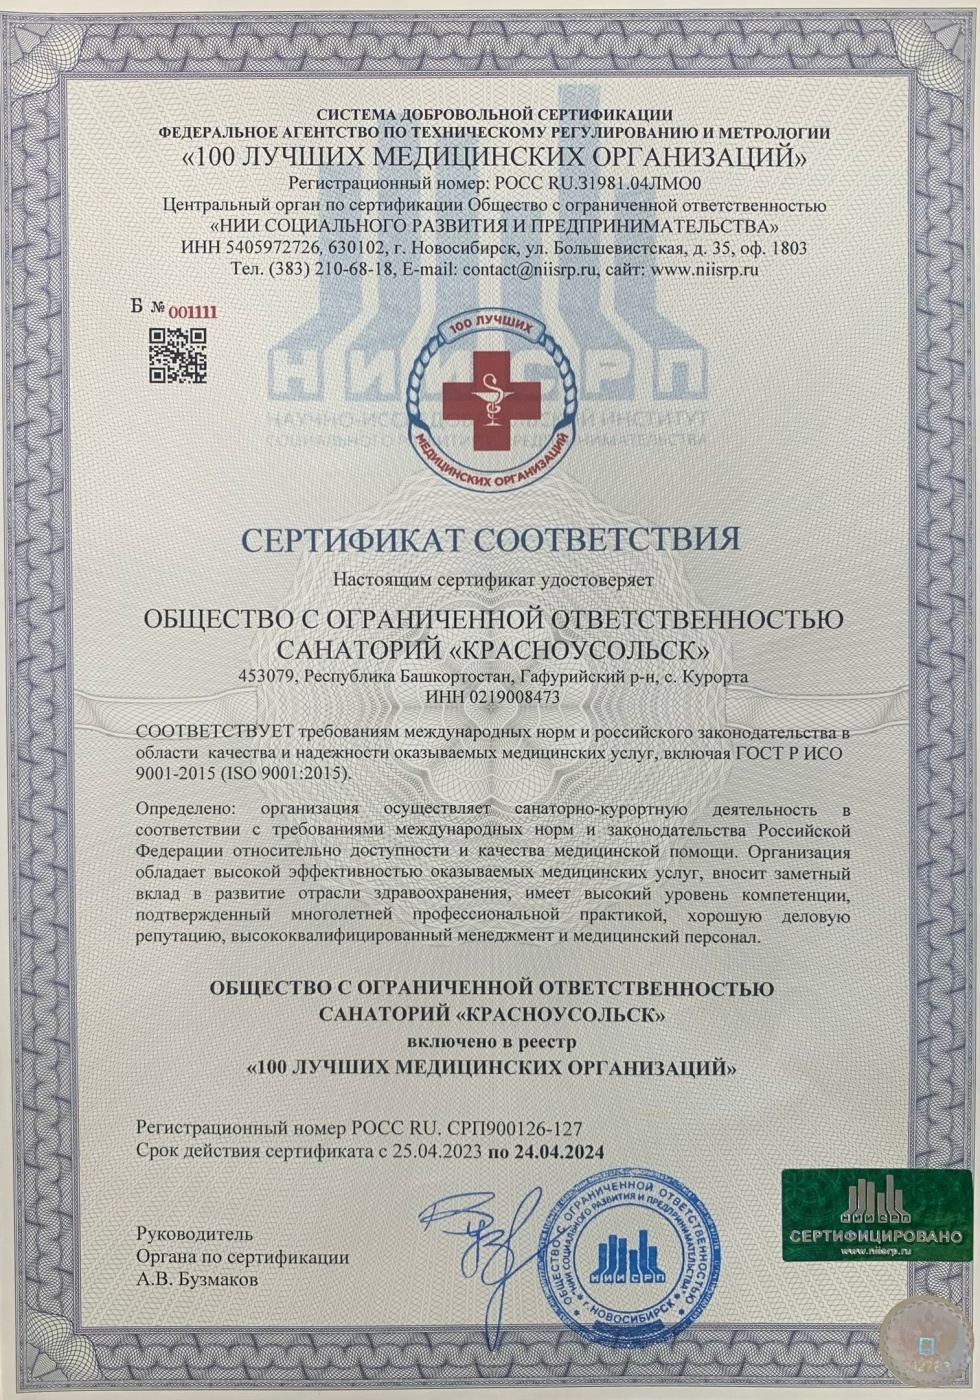 Санаторий «Красноусольск» в списке лучших медицинских организаций России